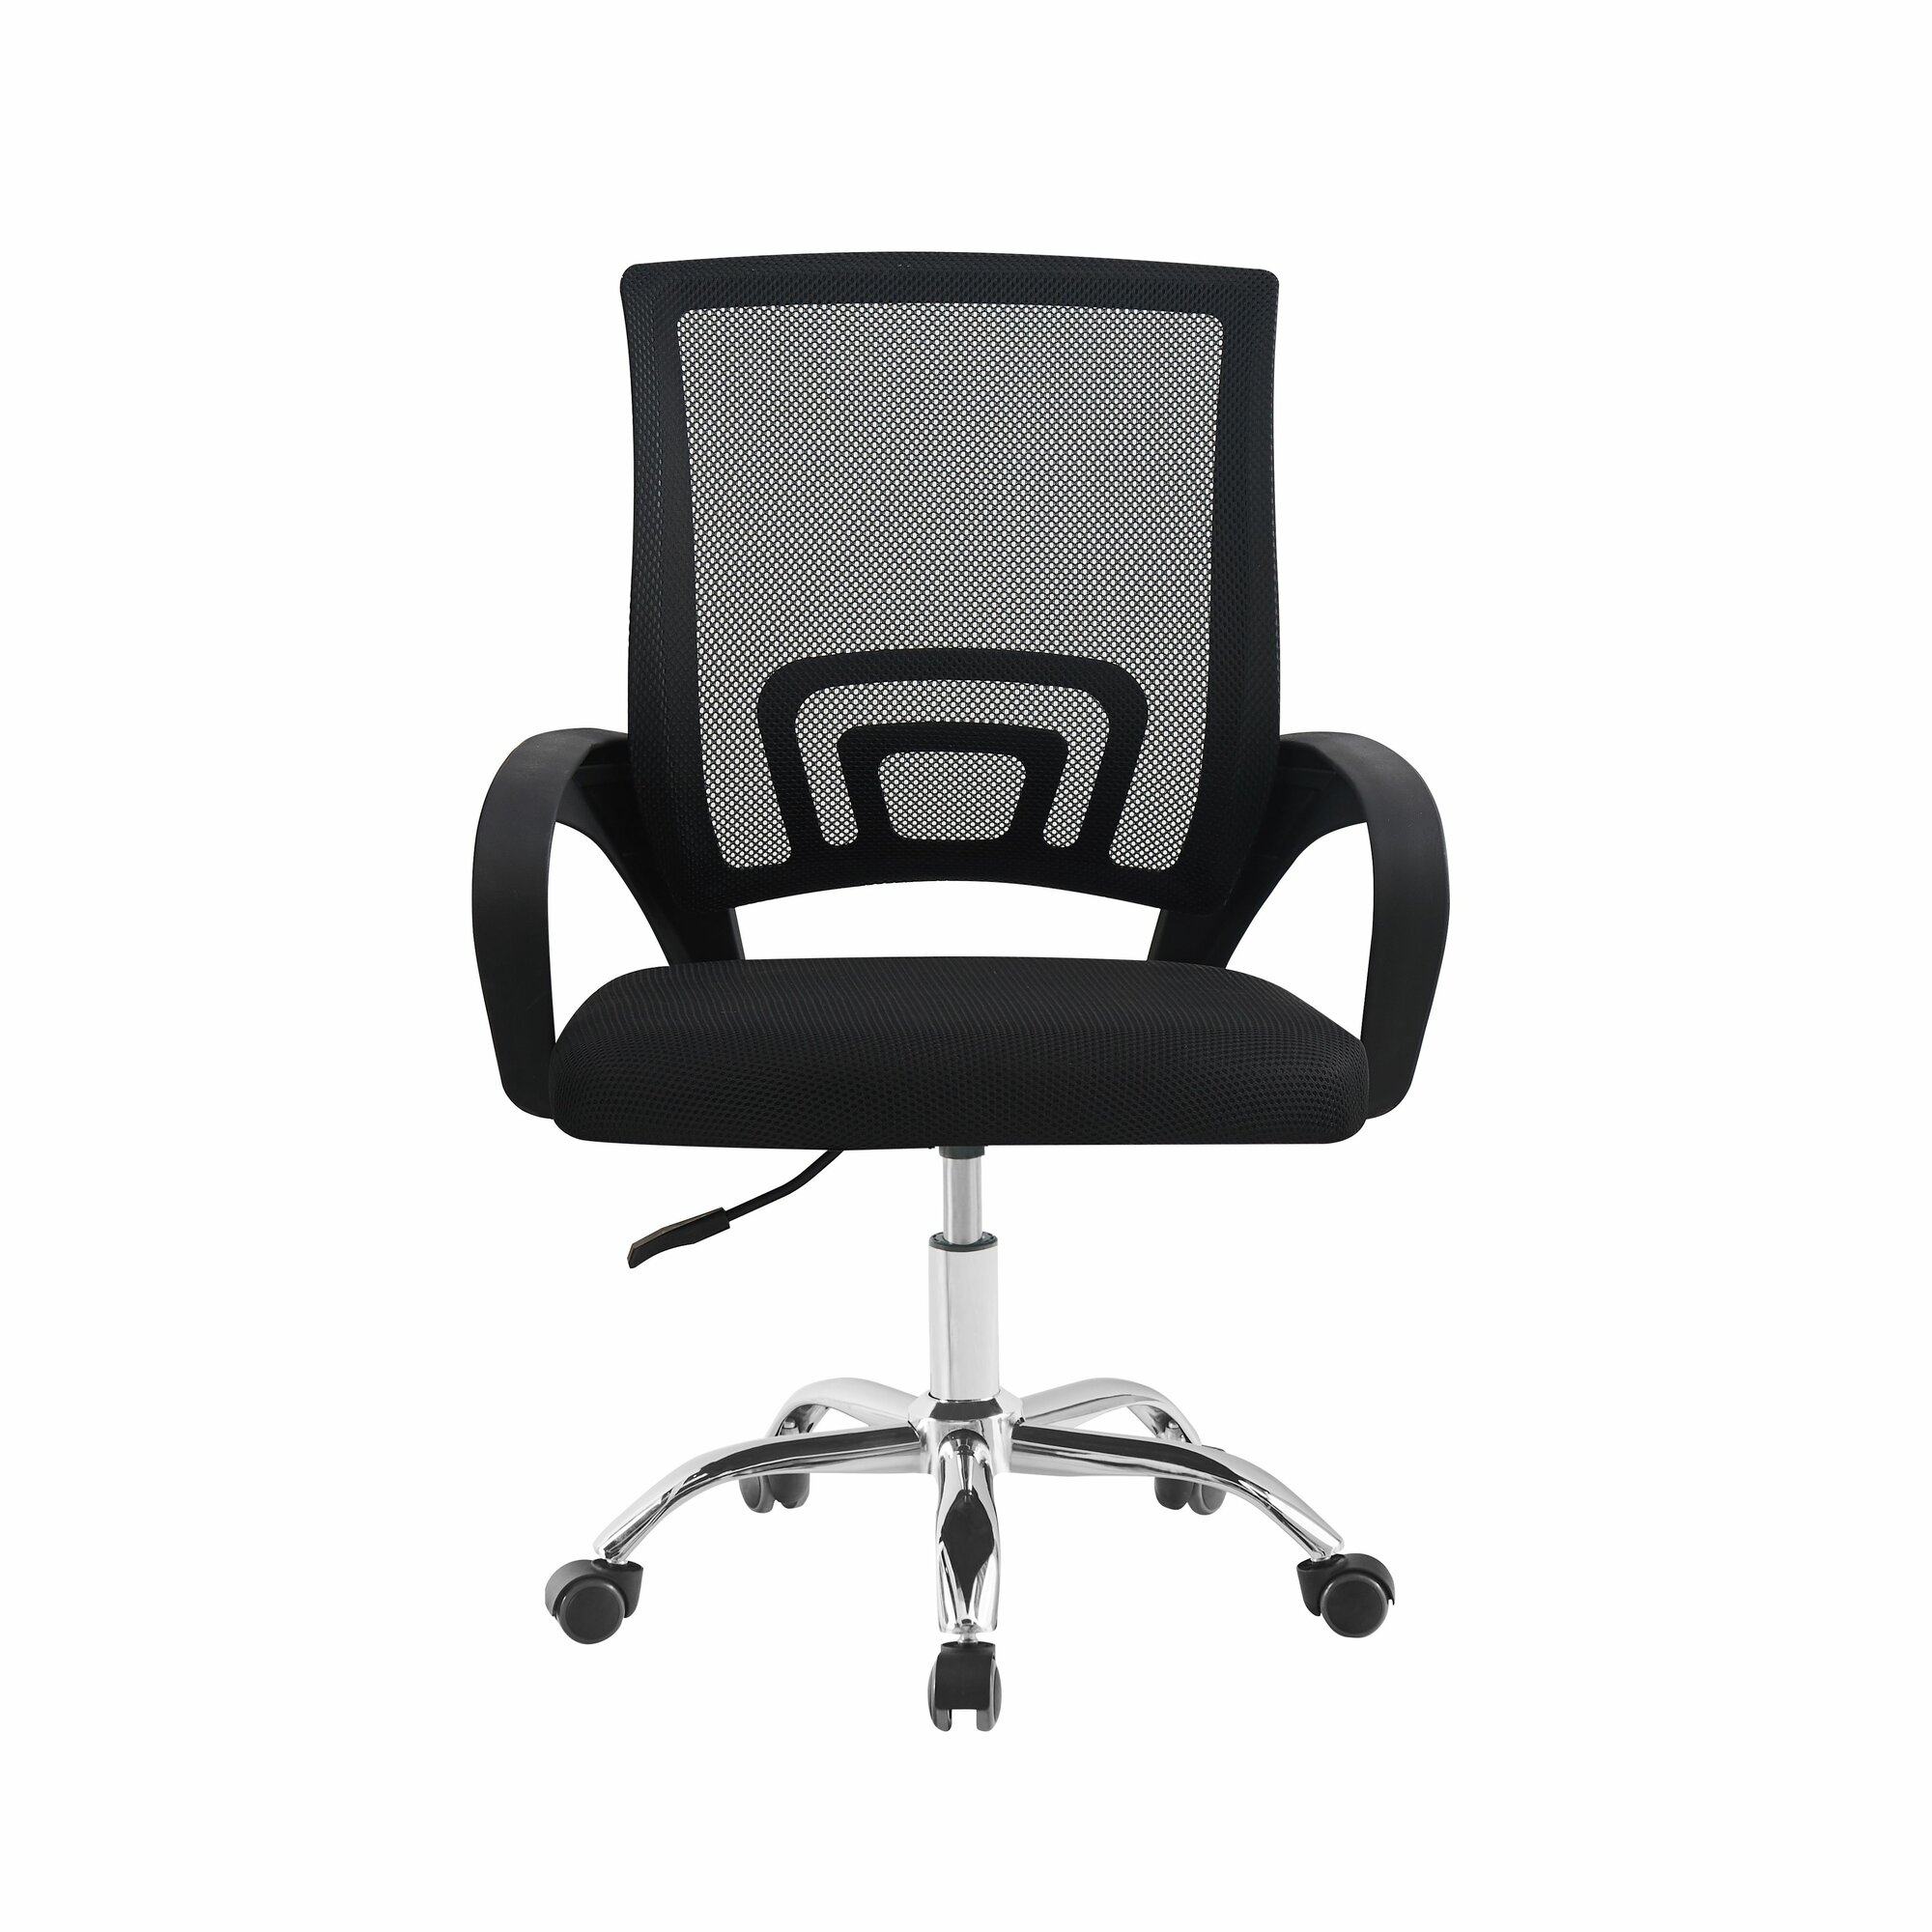 Офисное кресло мягкое со спинкой на колесиках СтулБержи, сетка, ткань, верх - черный, низ - хром